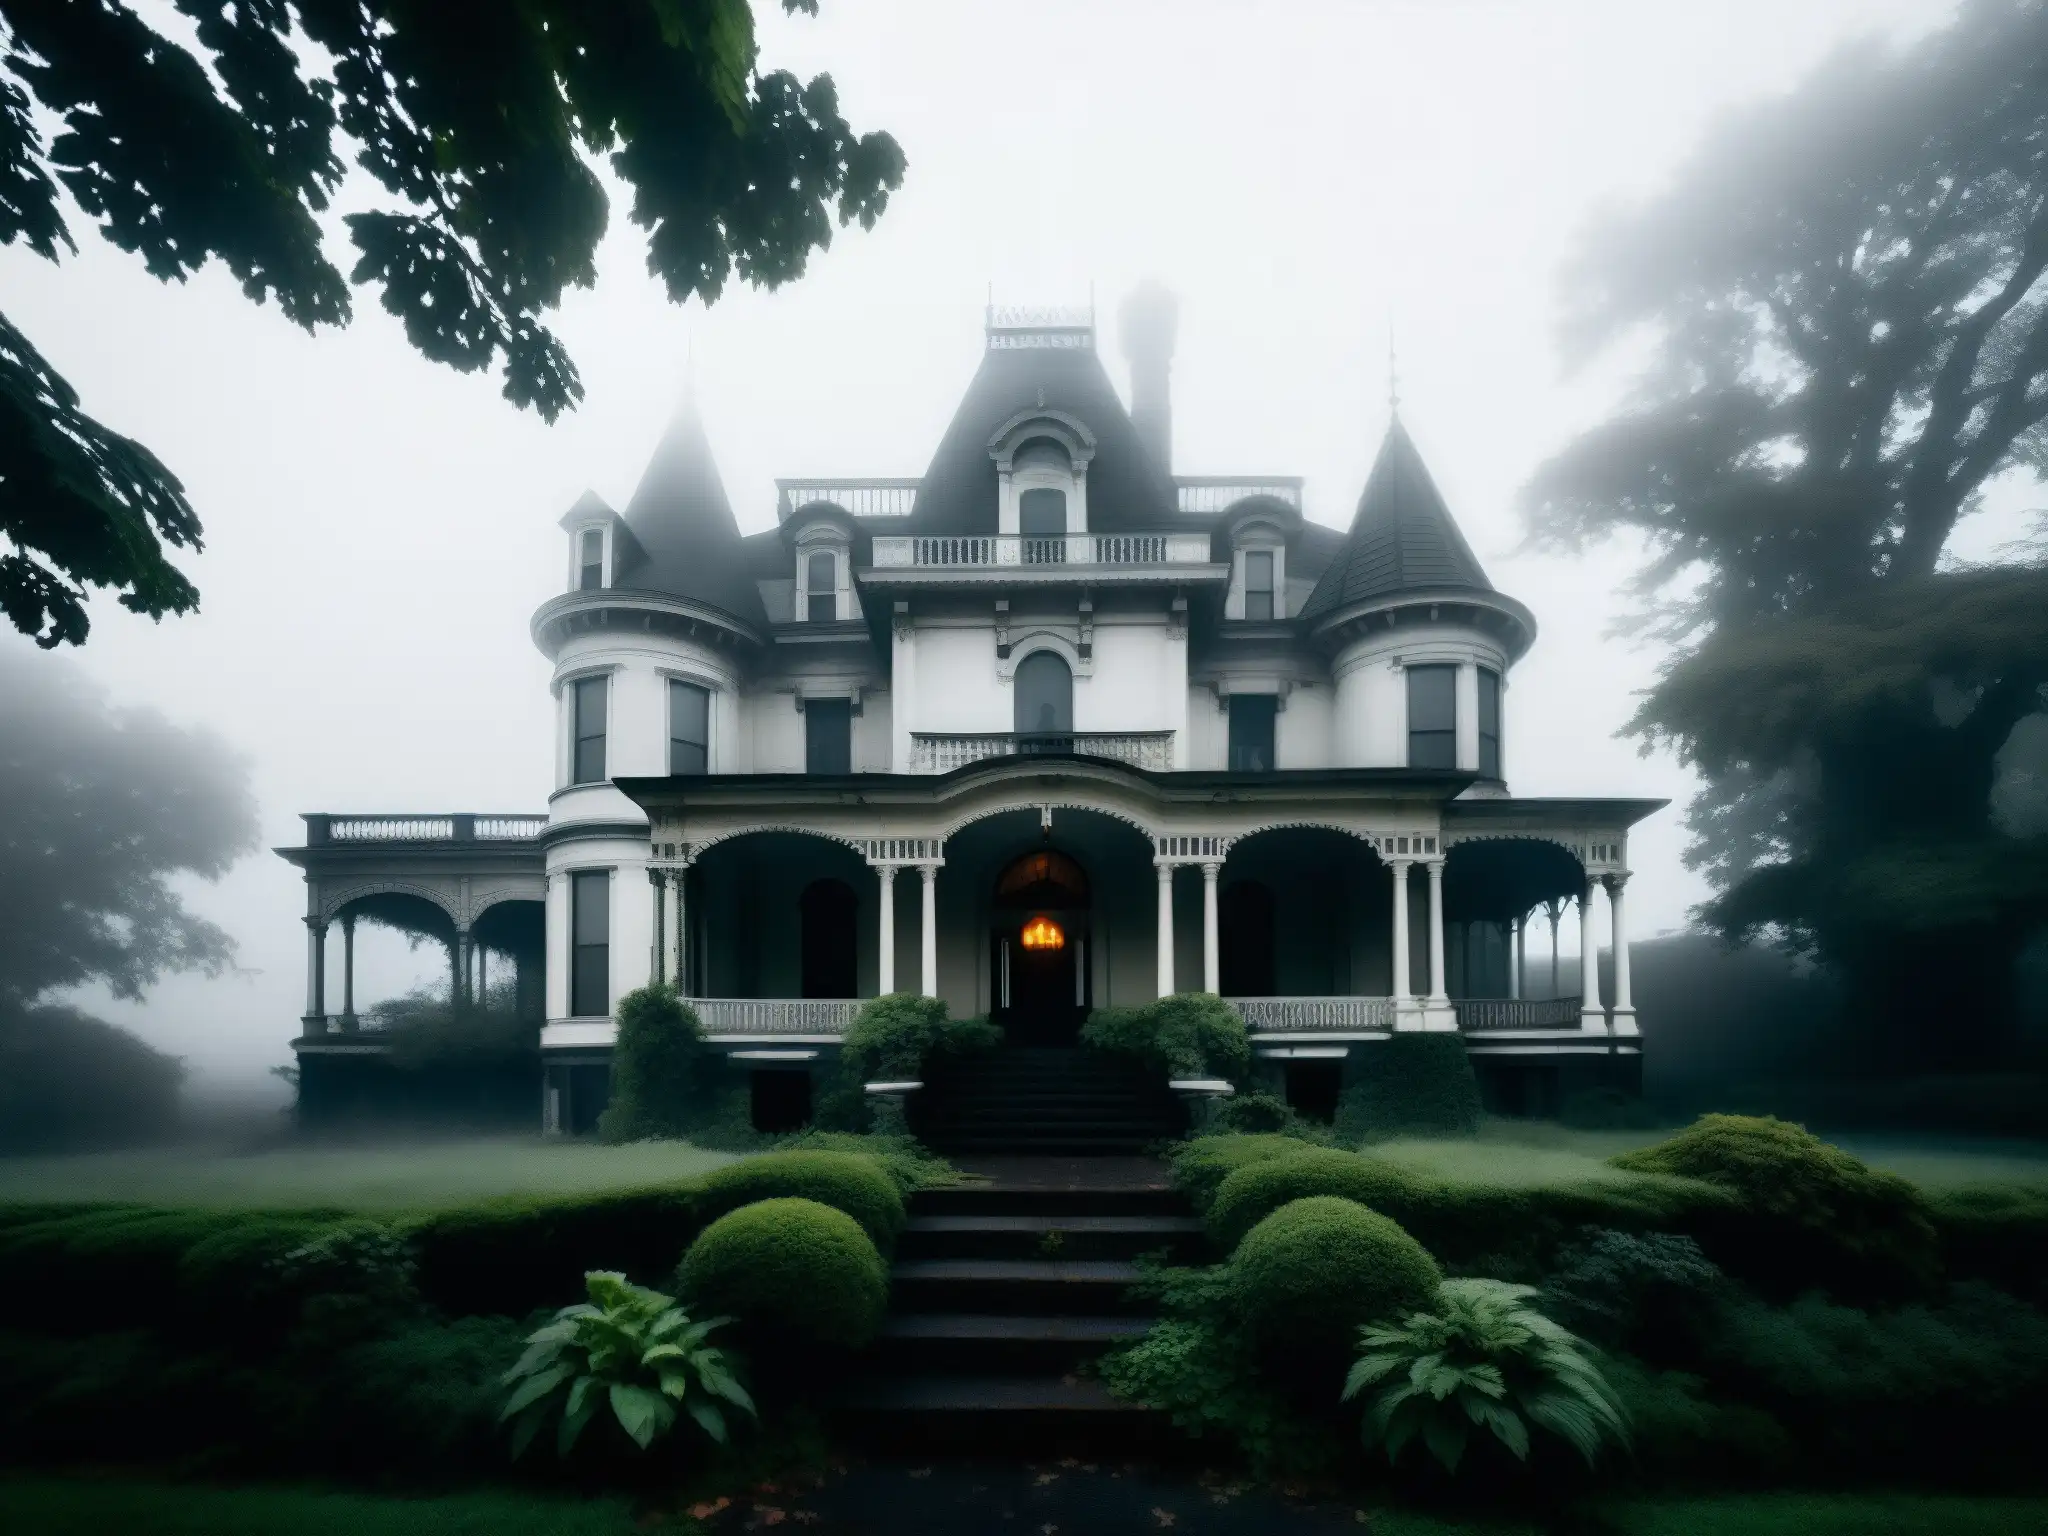 La mansión victoriana envuelta en niebla evoca la psicología del miedo en Himuro Mansion